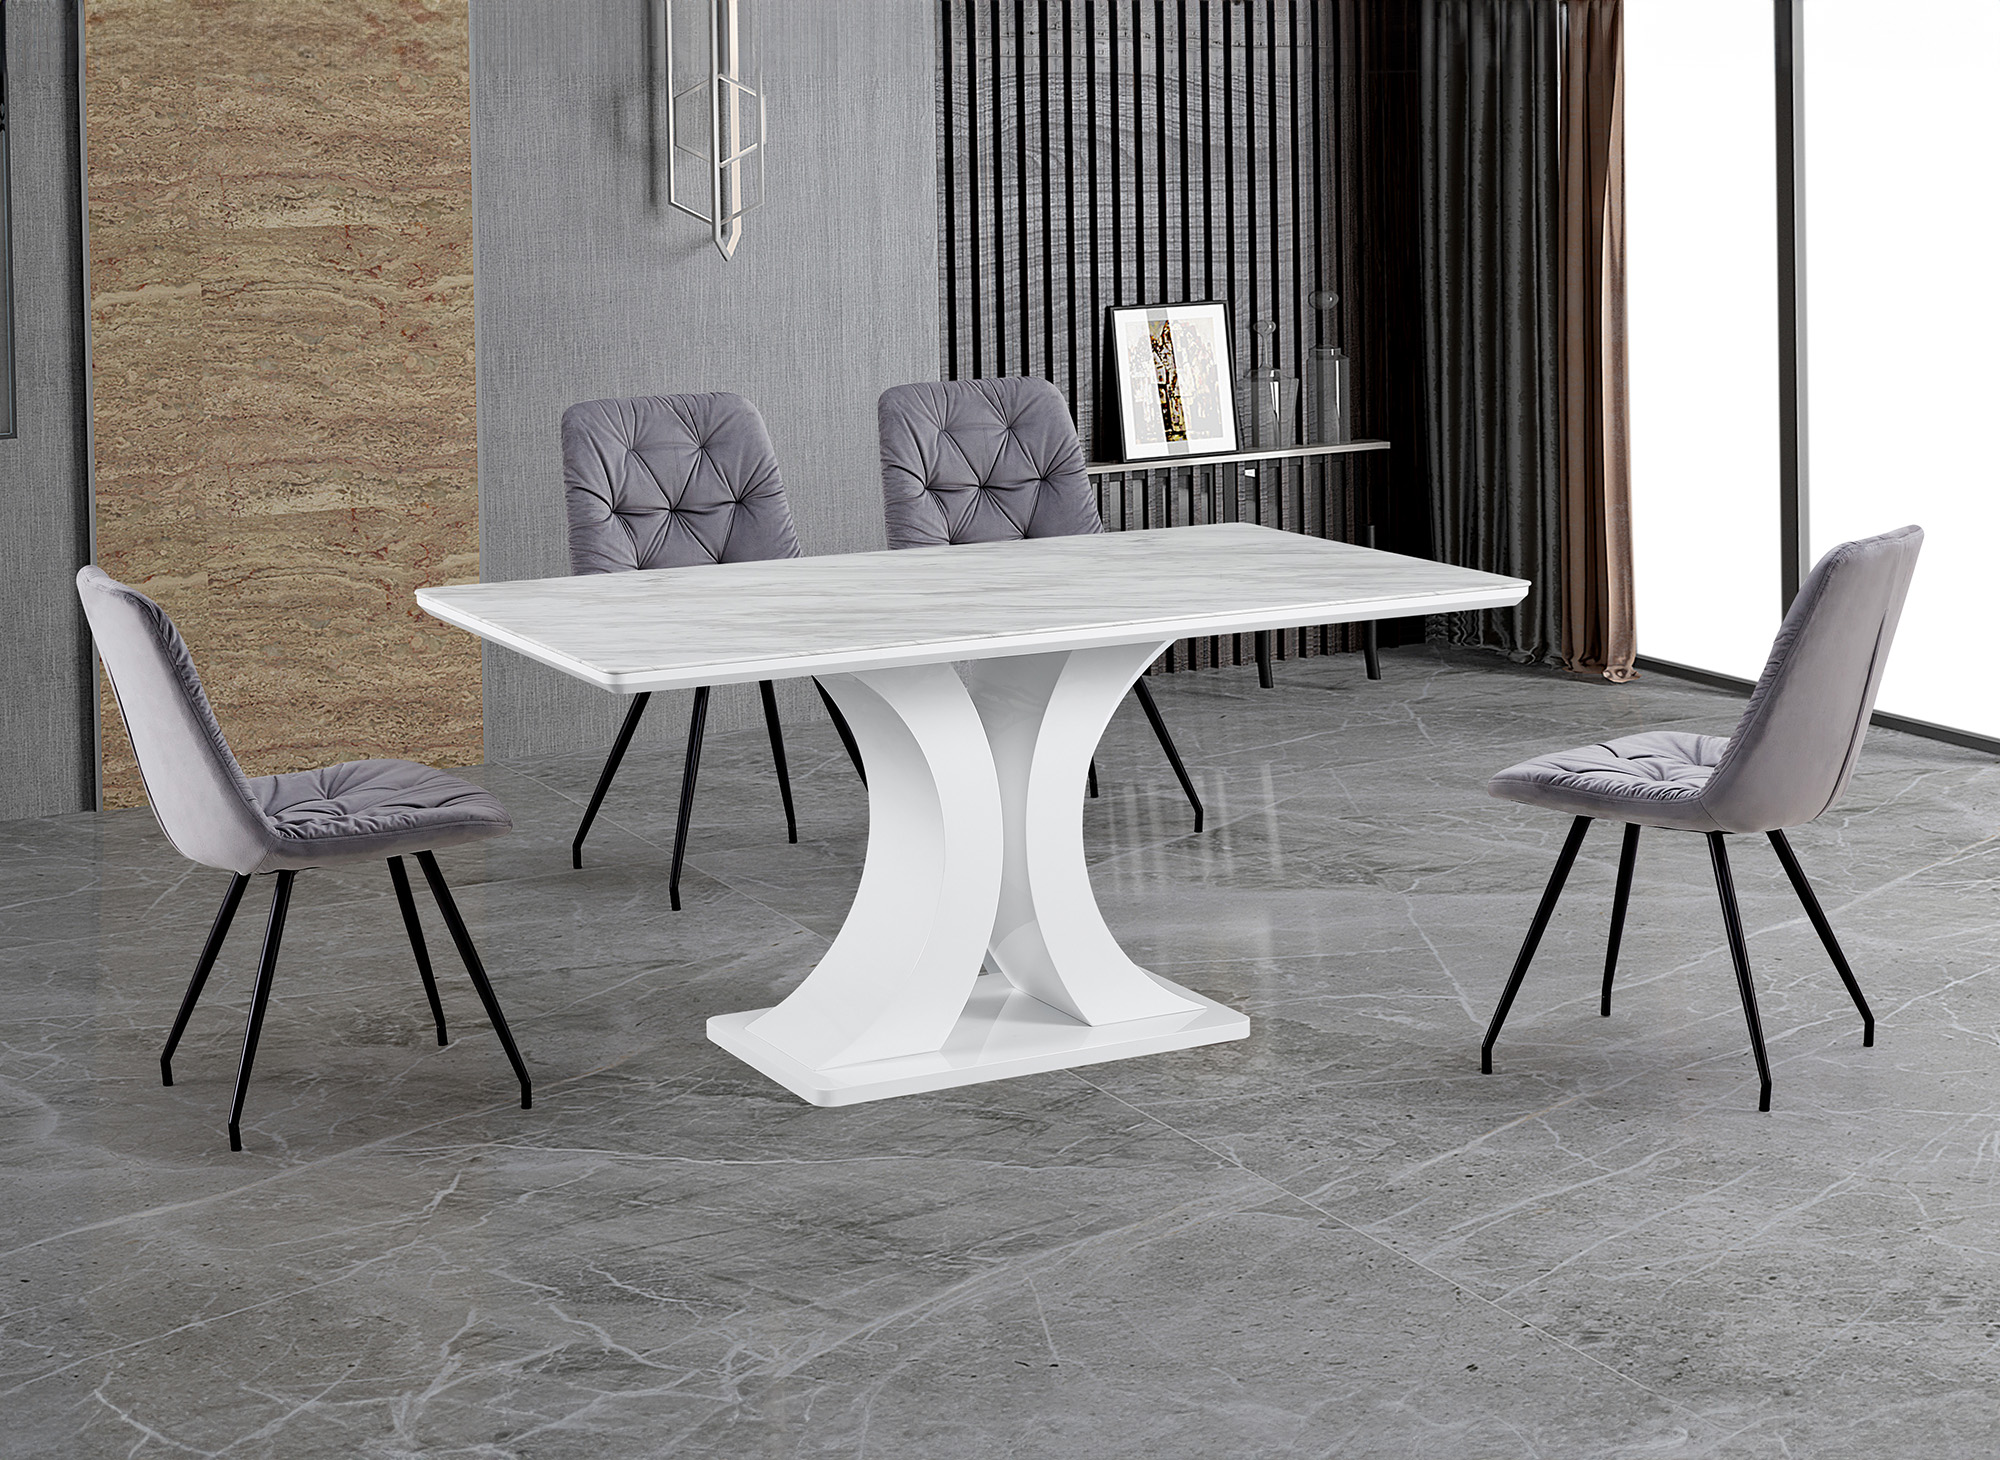 Table à manger rectangulaire design effet marbre blanc et argenté